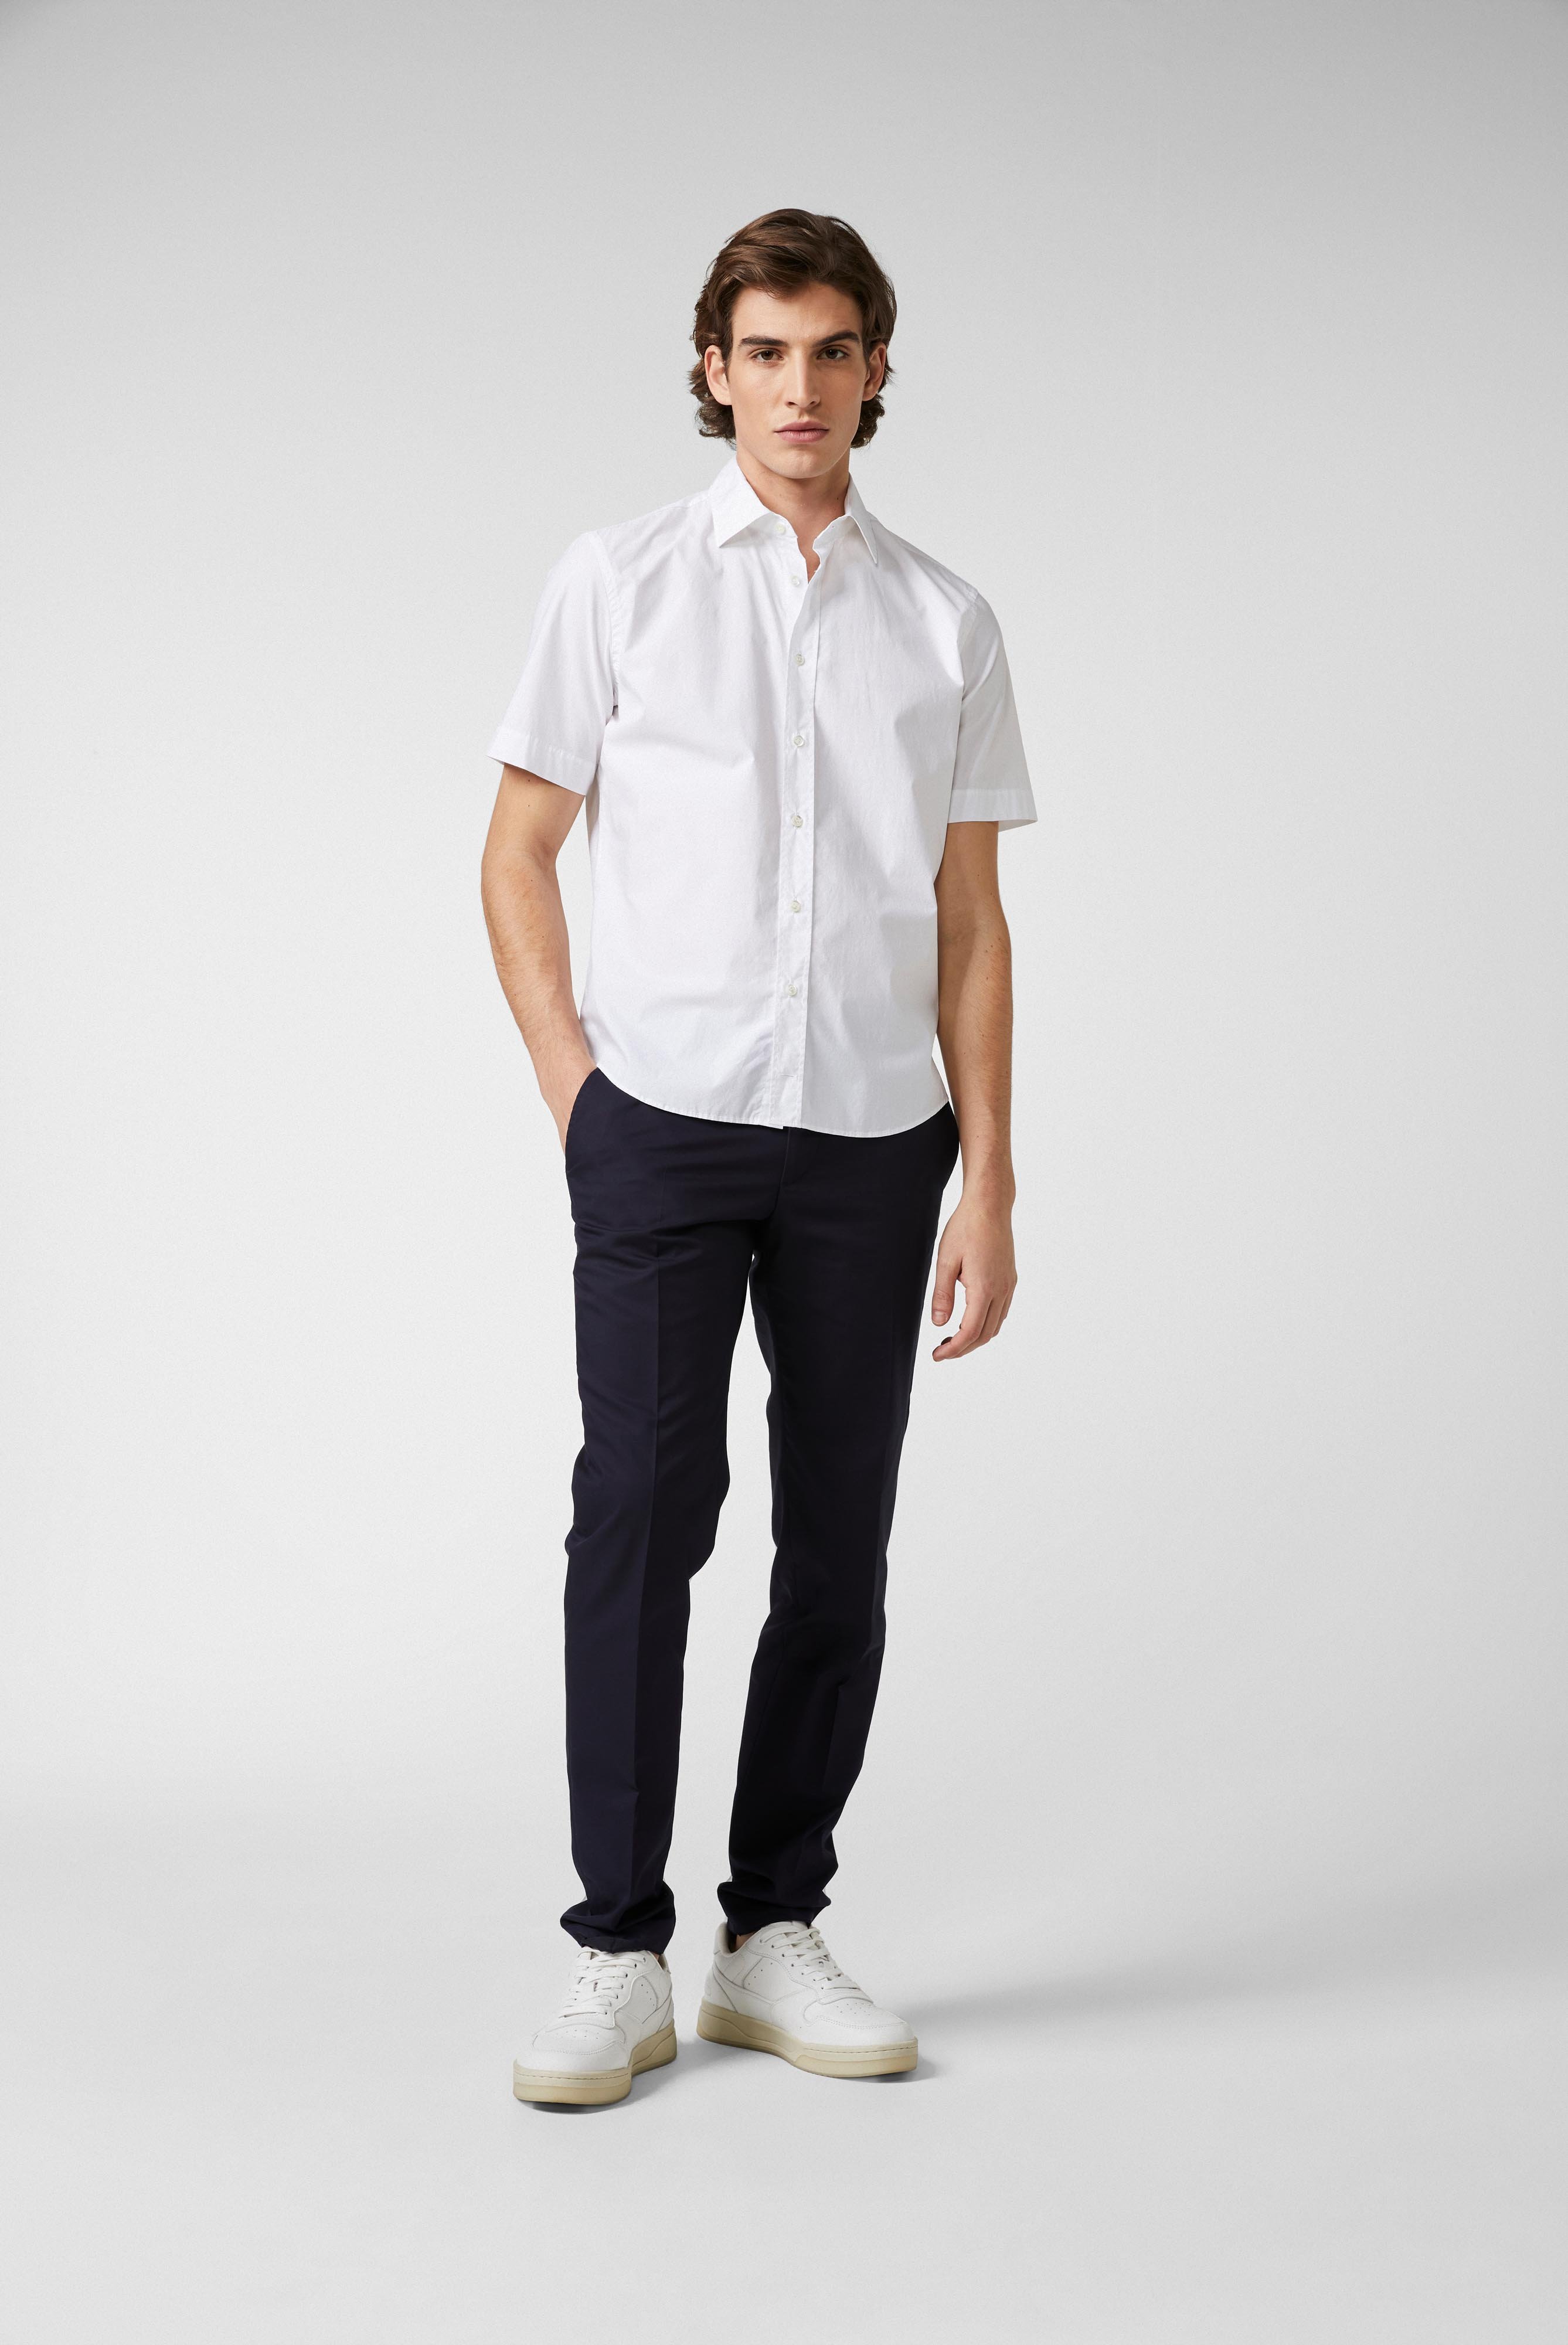 Kurzarm Hemden+Hemd aus leichter Baumwolle mit Stretch-Hemdärmeln+20.2035.Q2.H00240.000.38